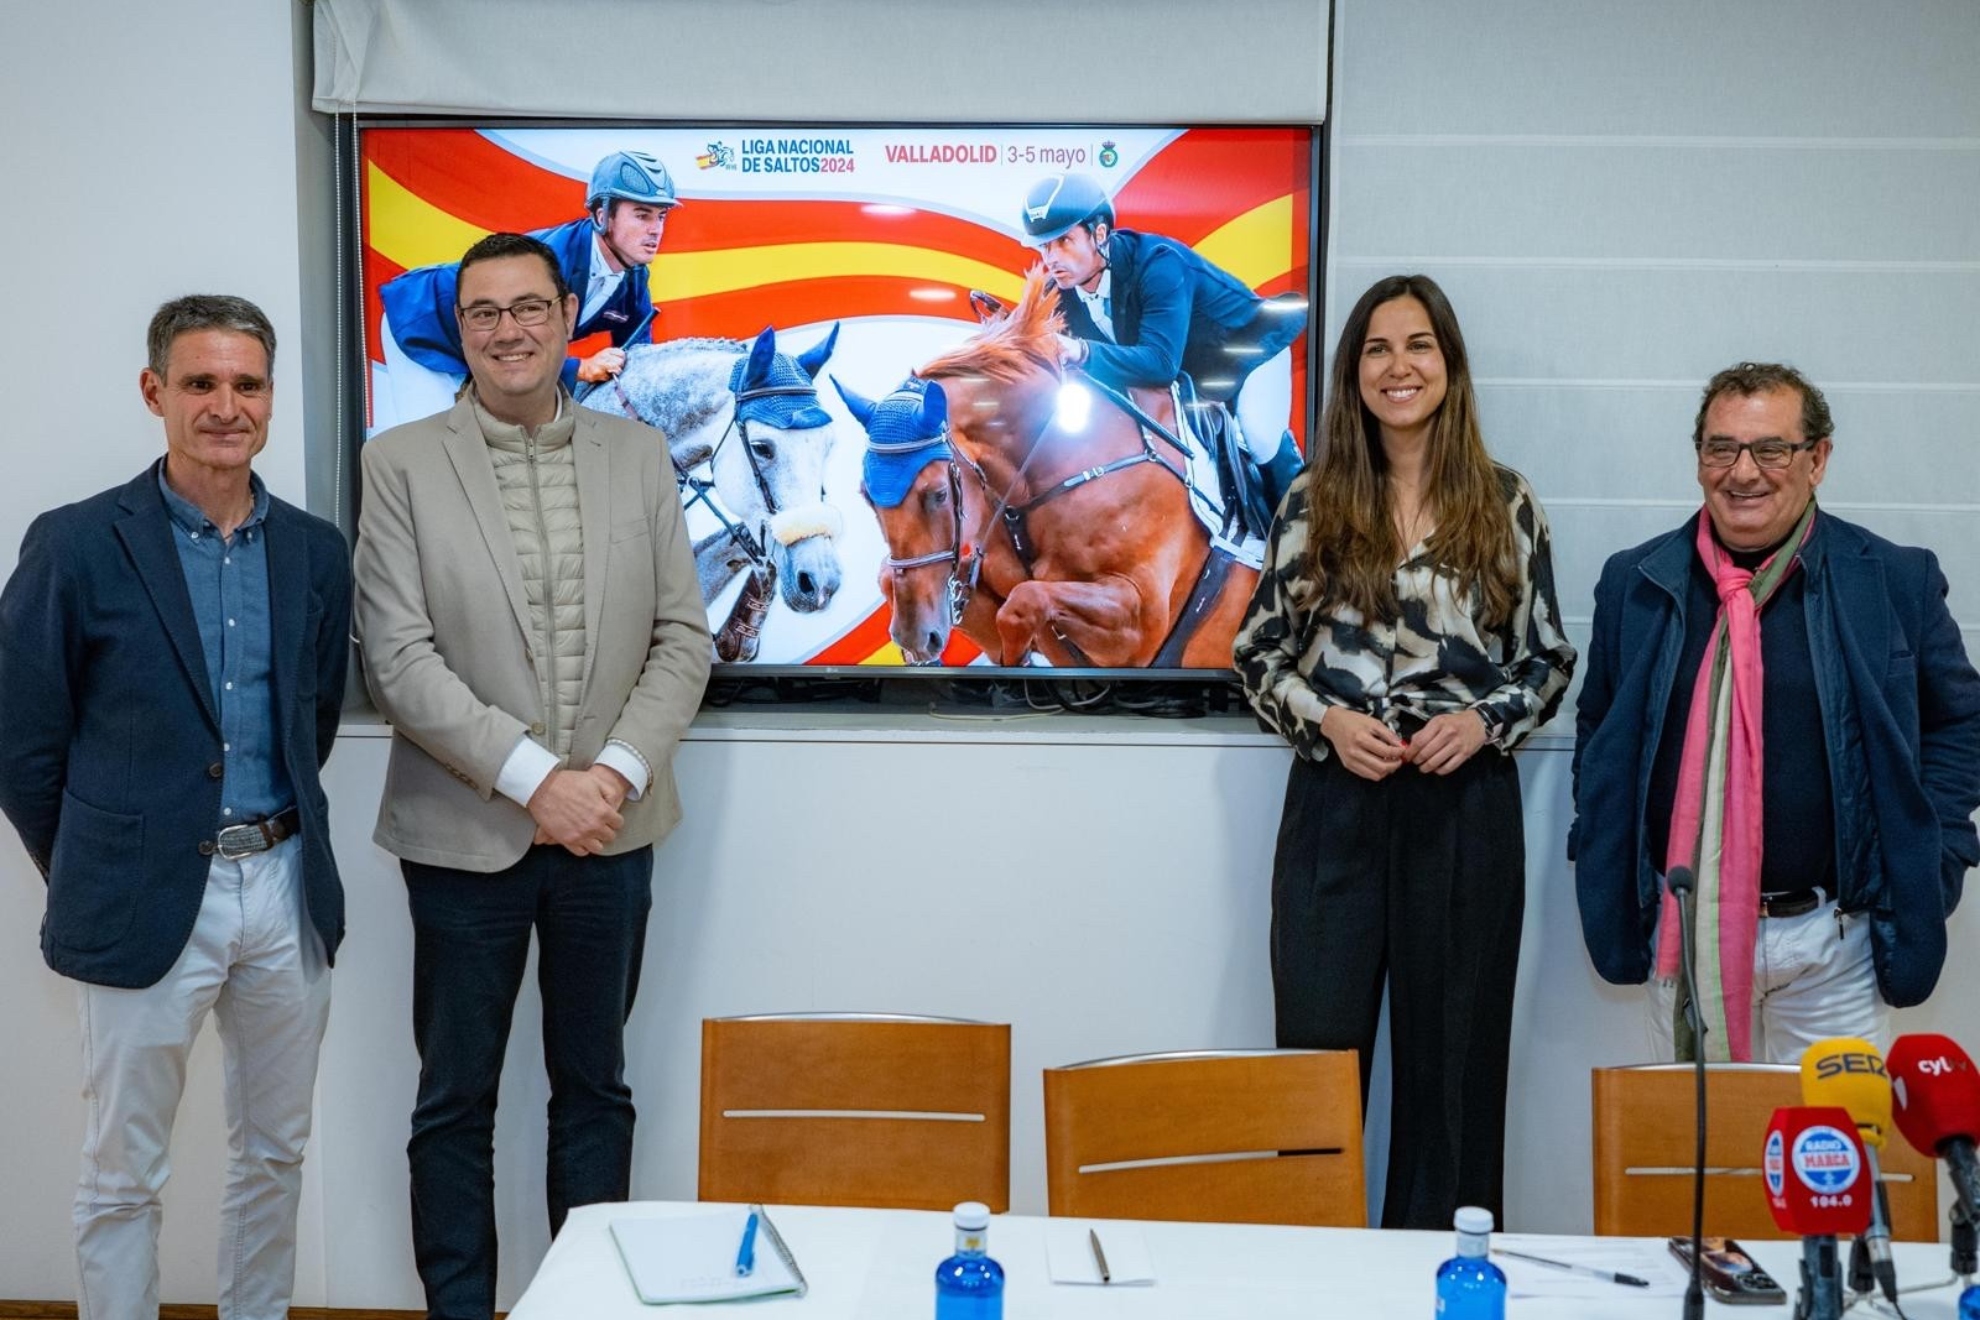 Foto de la presentación del CSN5* Valladolid, segunda sede que para nosotros es de gran importancia dentro de la Liga Nacional de Saltos.